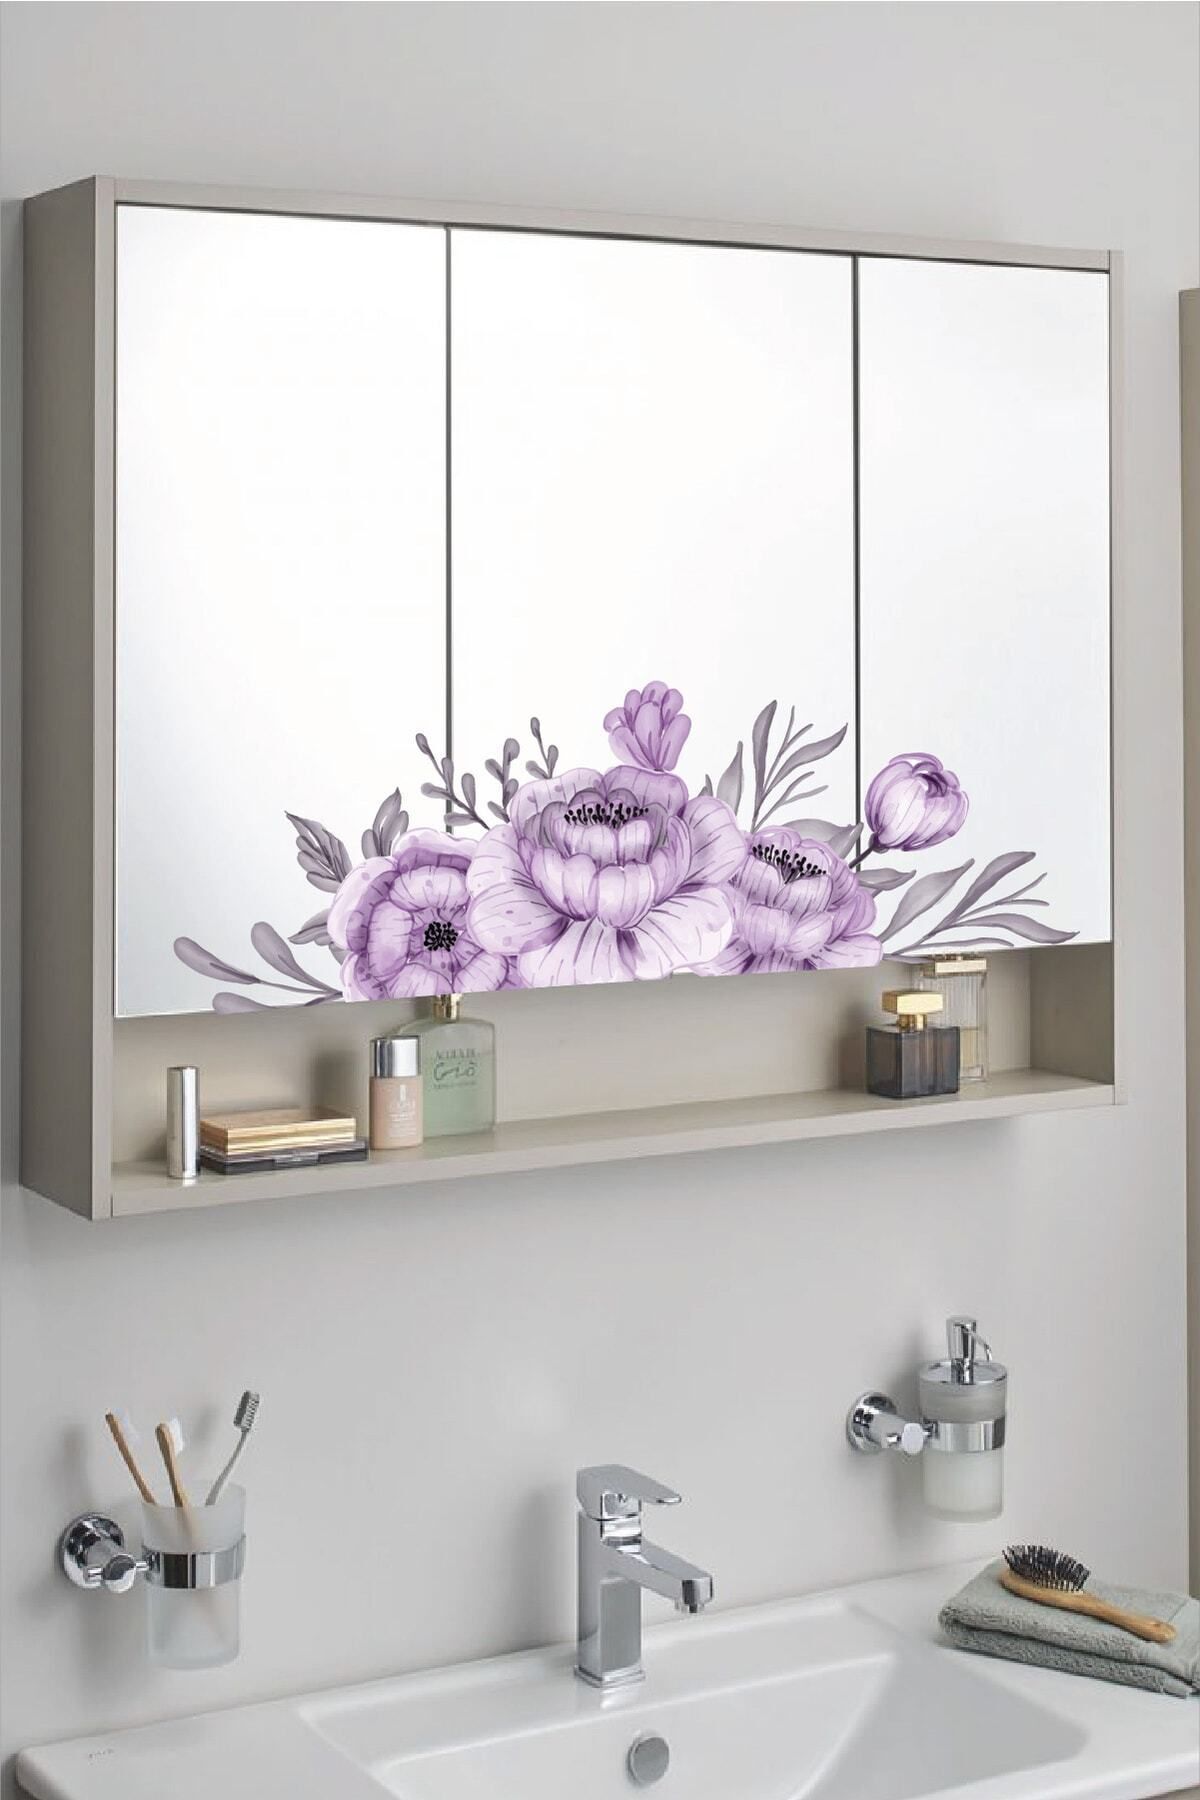 212shop Mor Çiçekler Dekoratif Banyo Salon Cam Ayna Duvar Dekor Sticker